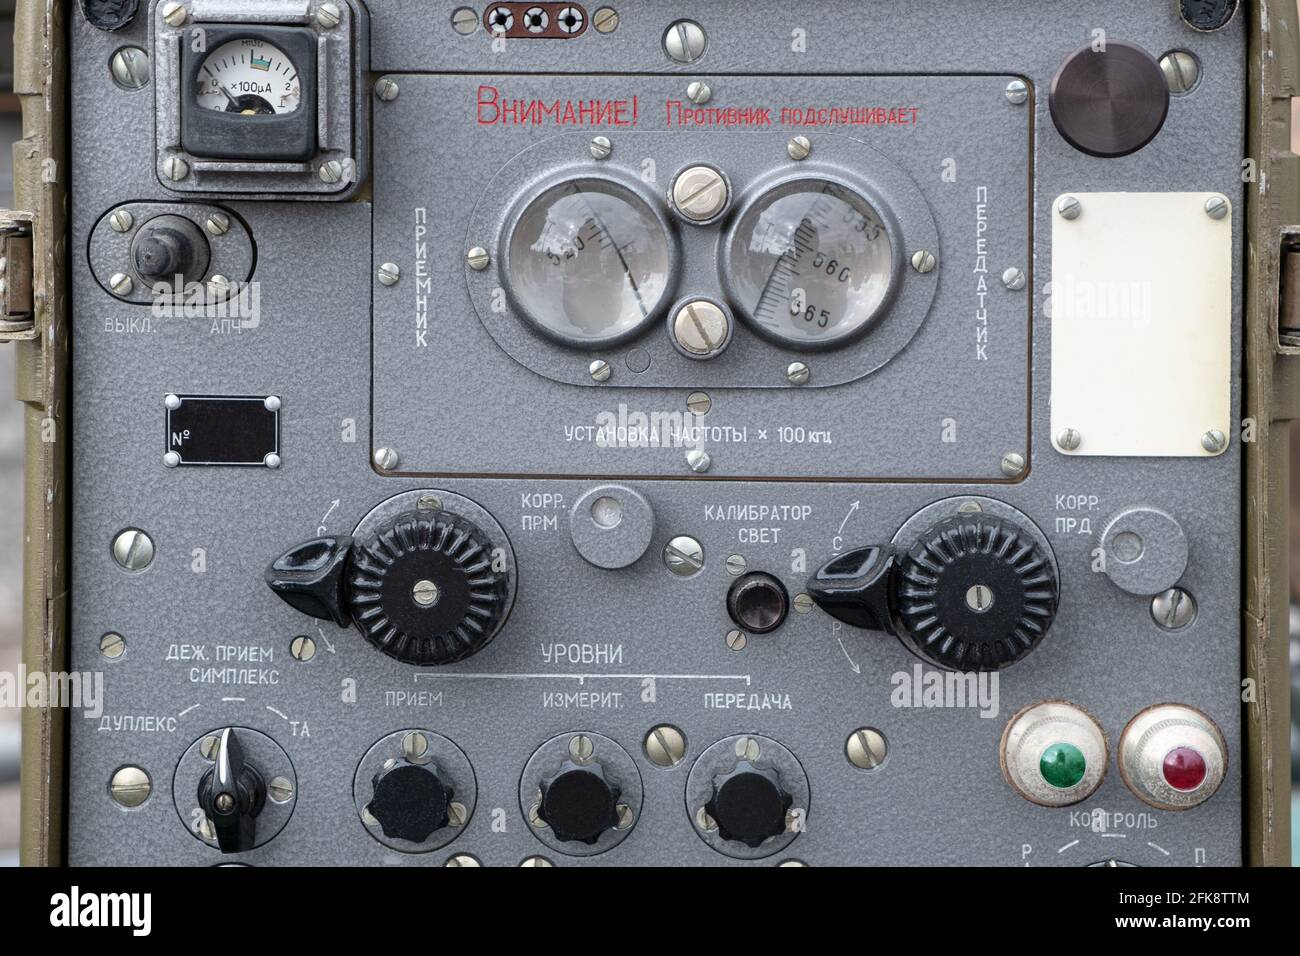 Un dispositivo portátil retro clásico militar antiguo de la Unión Soviética  señal de radio radar de seguimiento. Para buscar emisoras de radio ilegales  y balizas de seguimiento de radio Fotografía de stock -